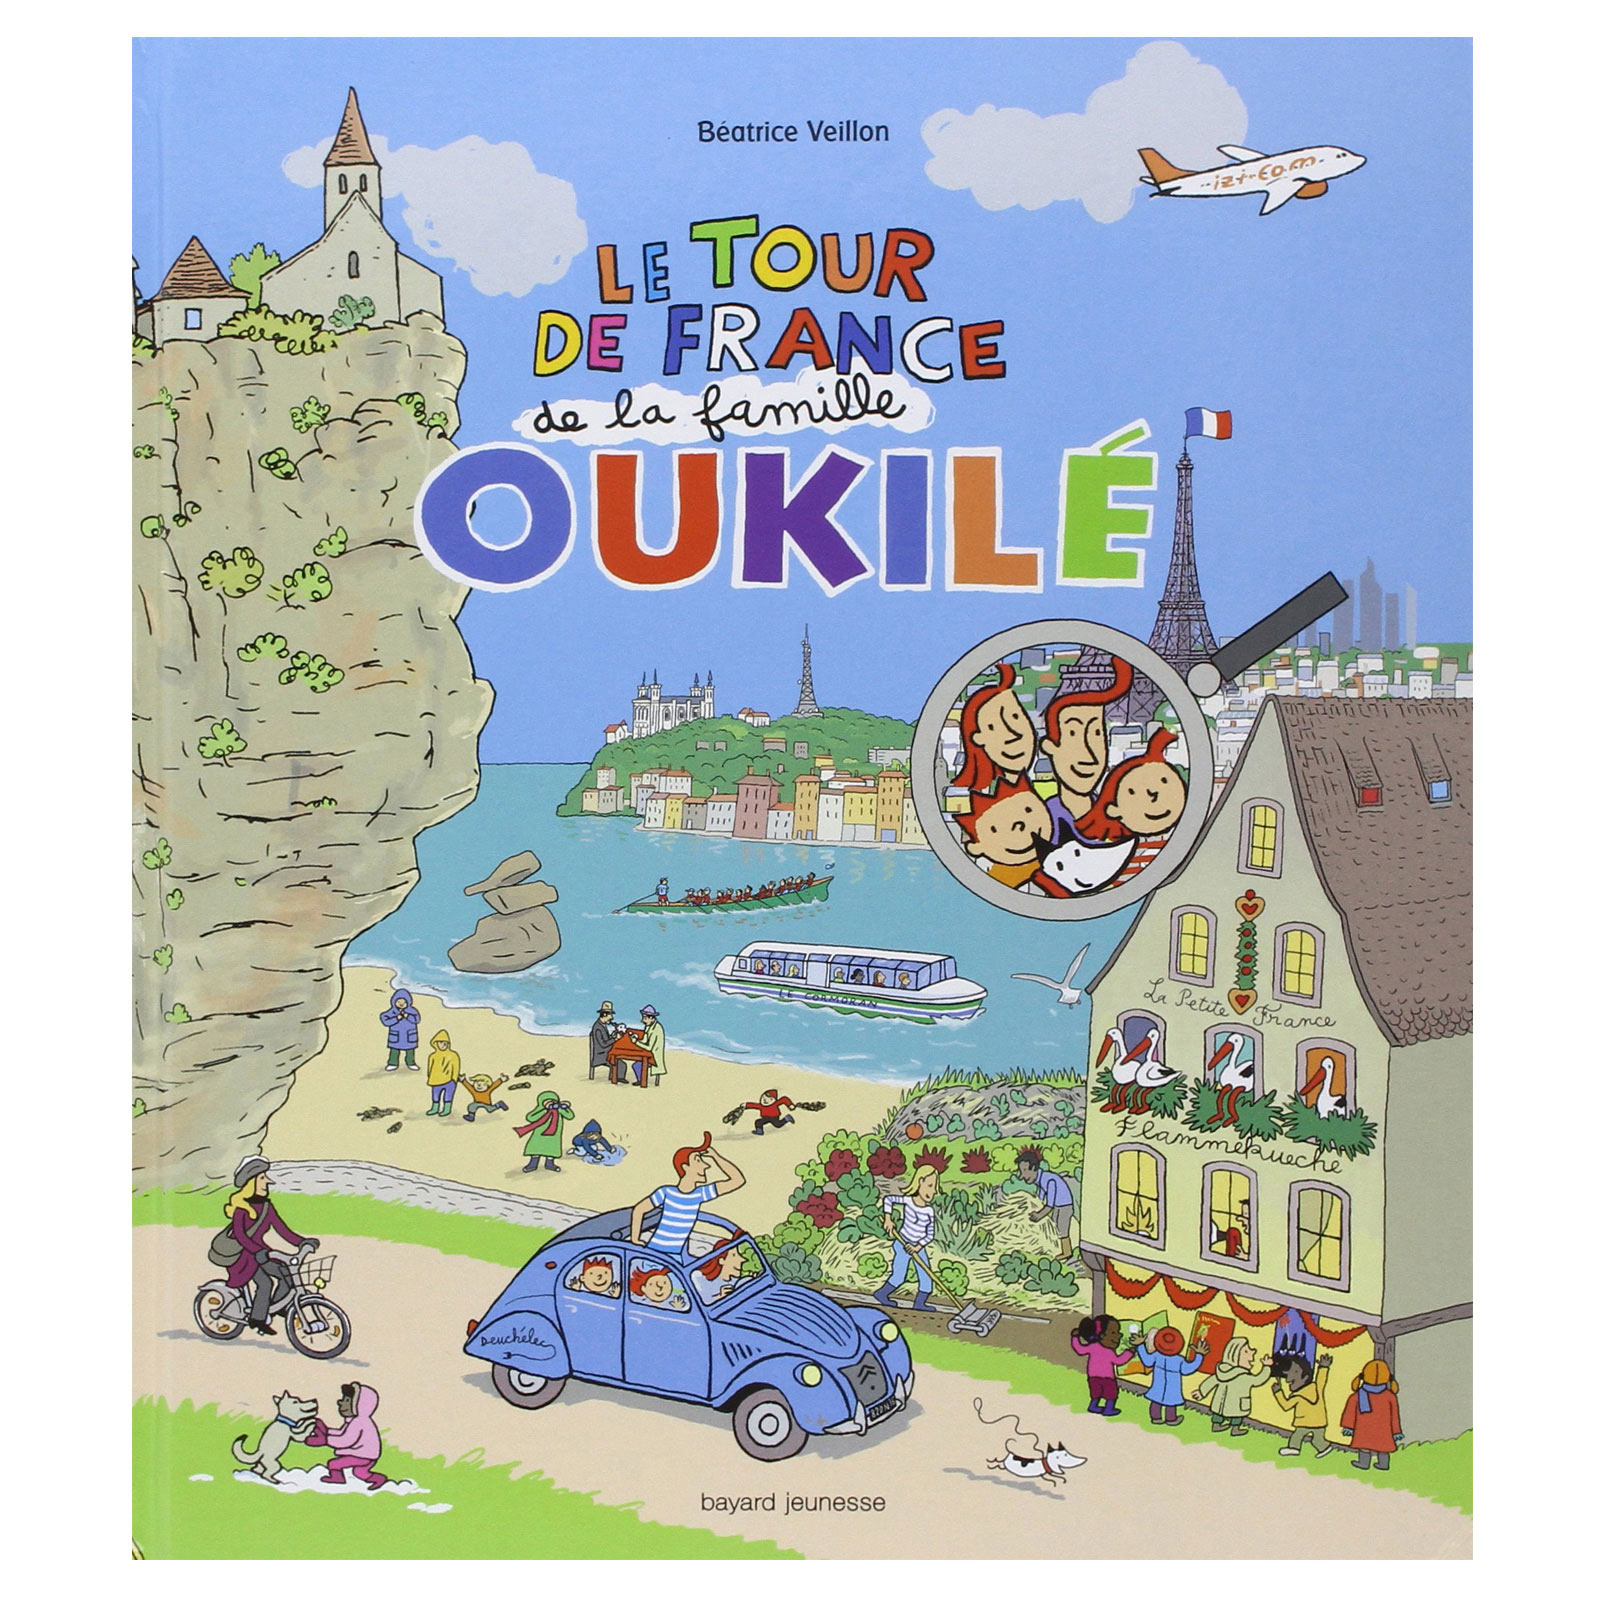 Le tour de France de la famille Oukilé